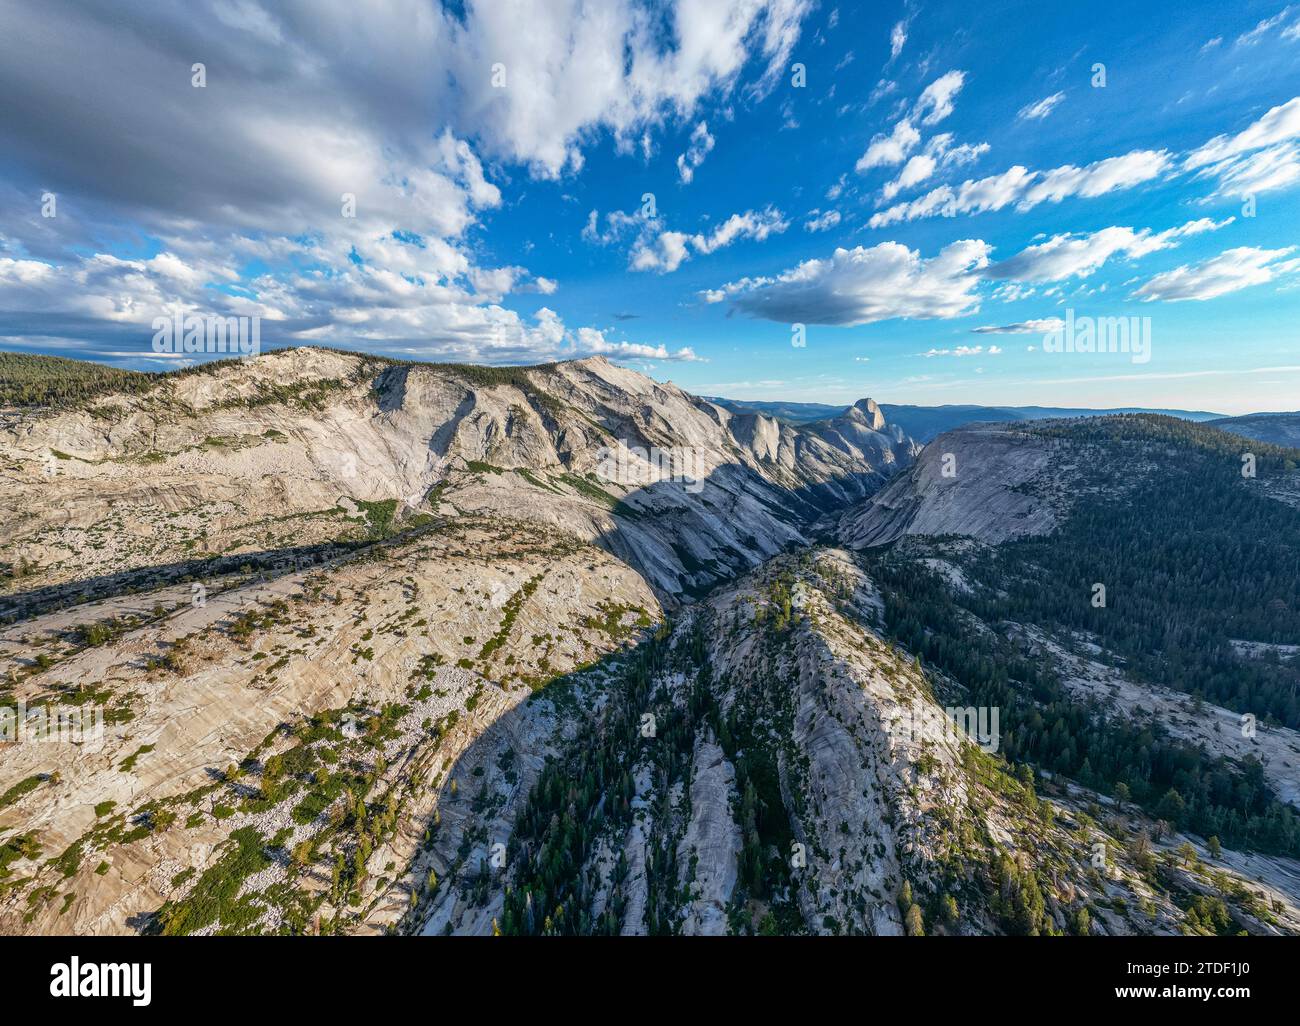 Montagnes de granit au coucher du soleil, parc national de Yosemite, site du patrimoine mondial de l'UNESCO, Californie, États-Unis d'Amérique, Amérique du Nord Banque D'Images